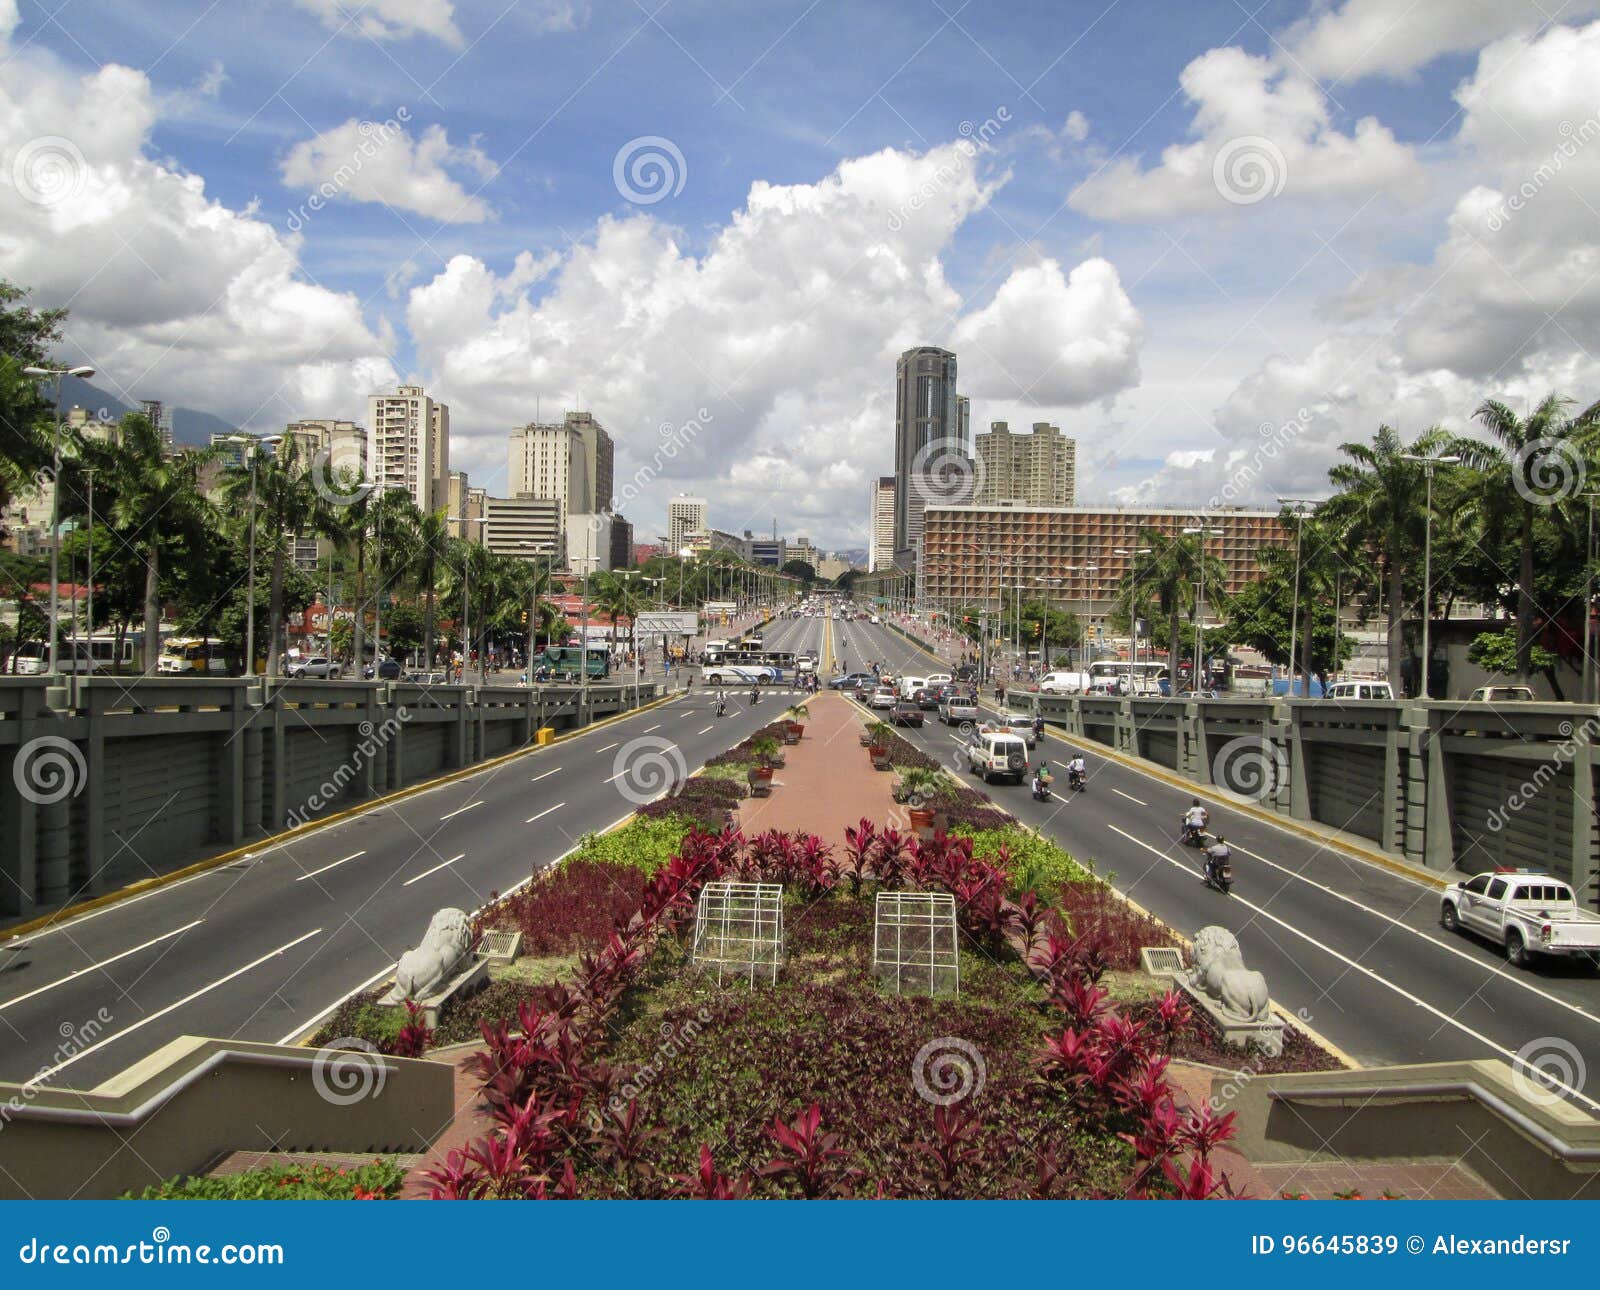 bolivar avenue,avenida bolivar,caracas,venezuela